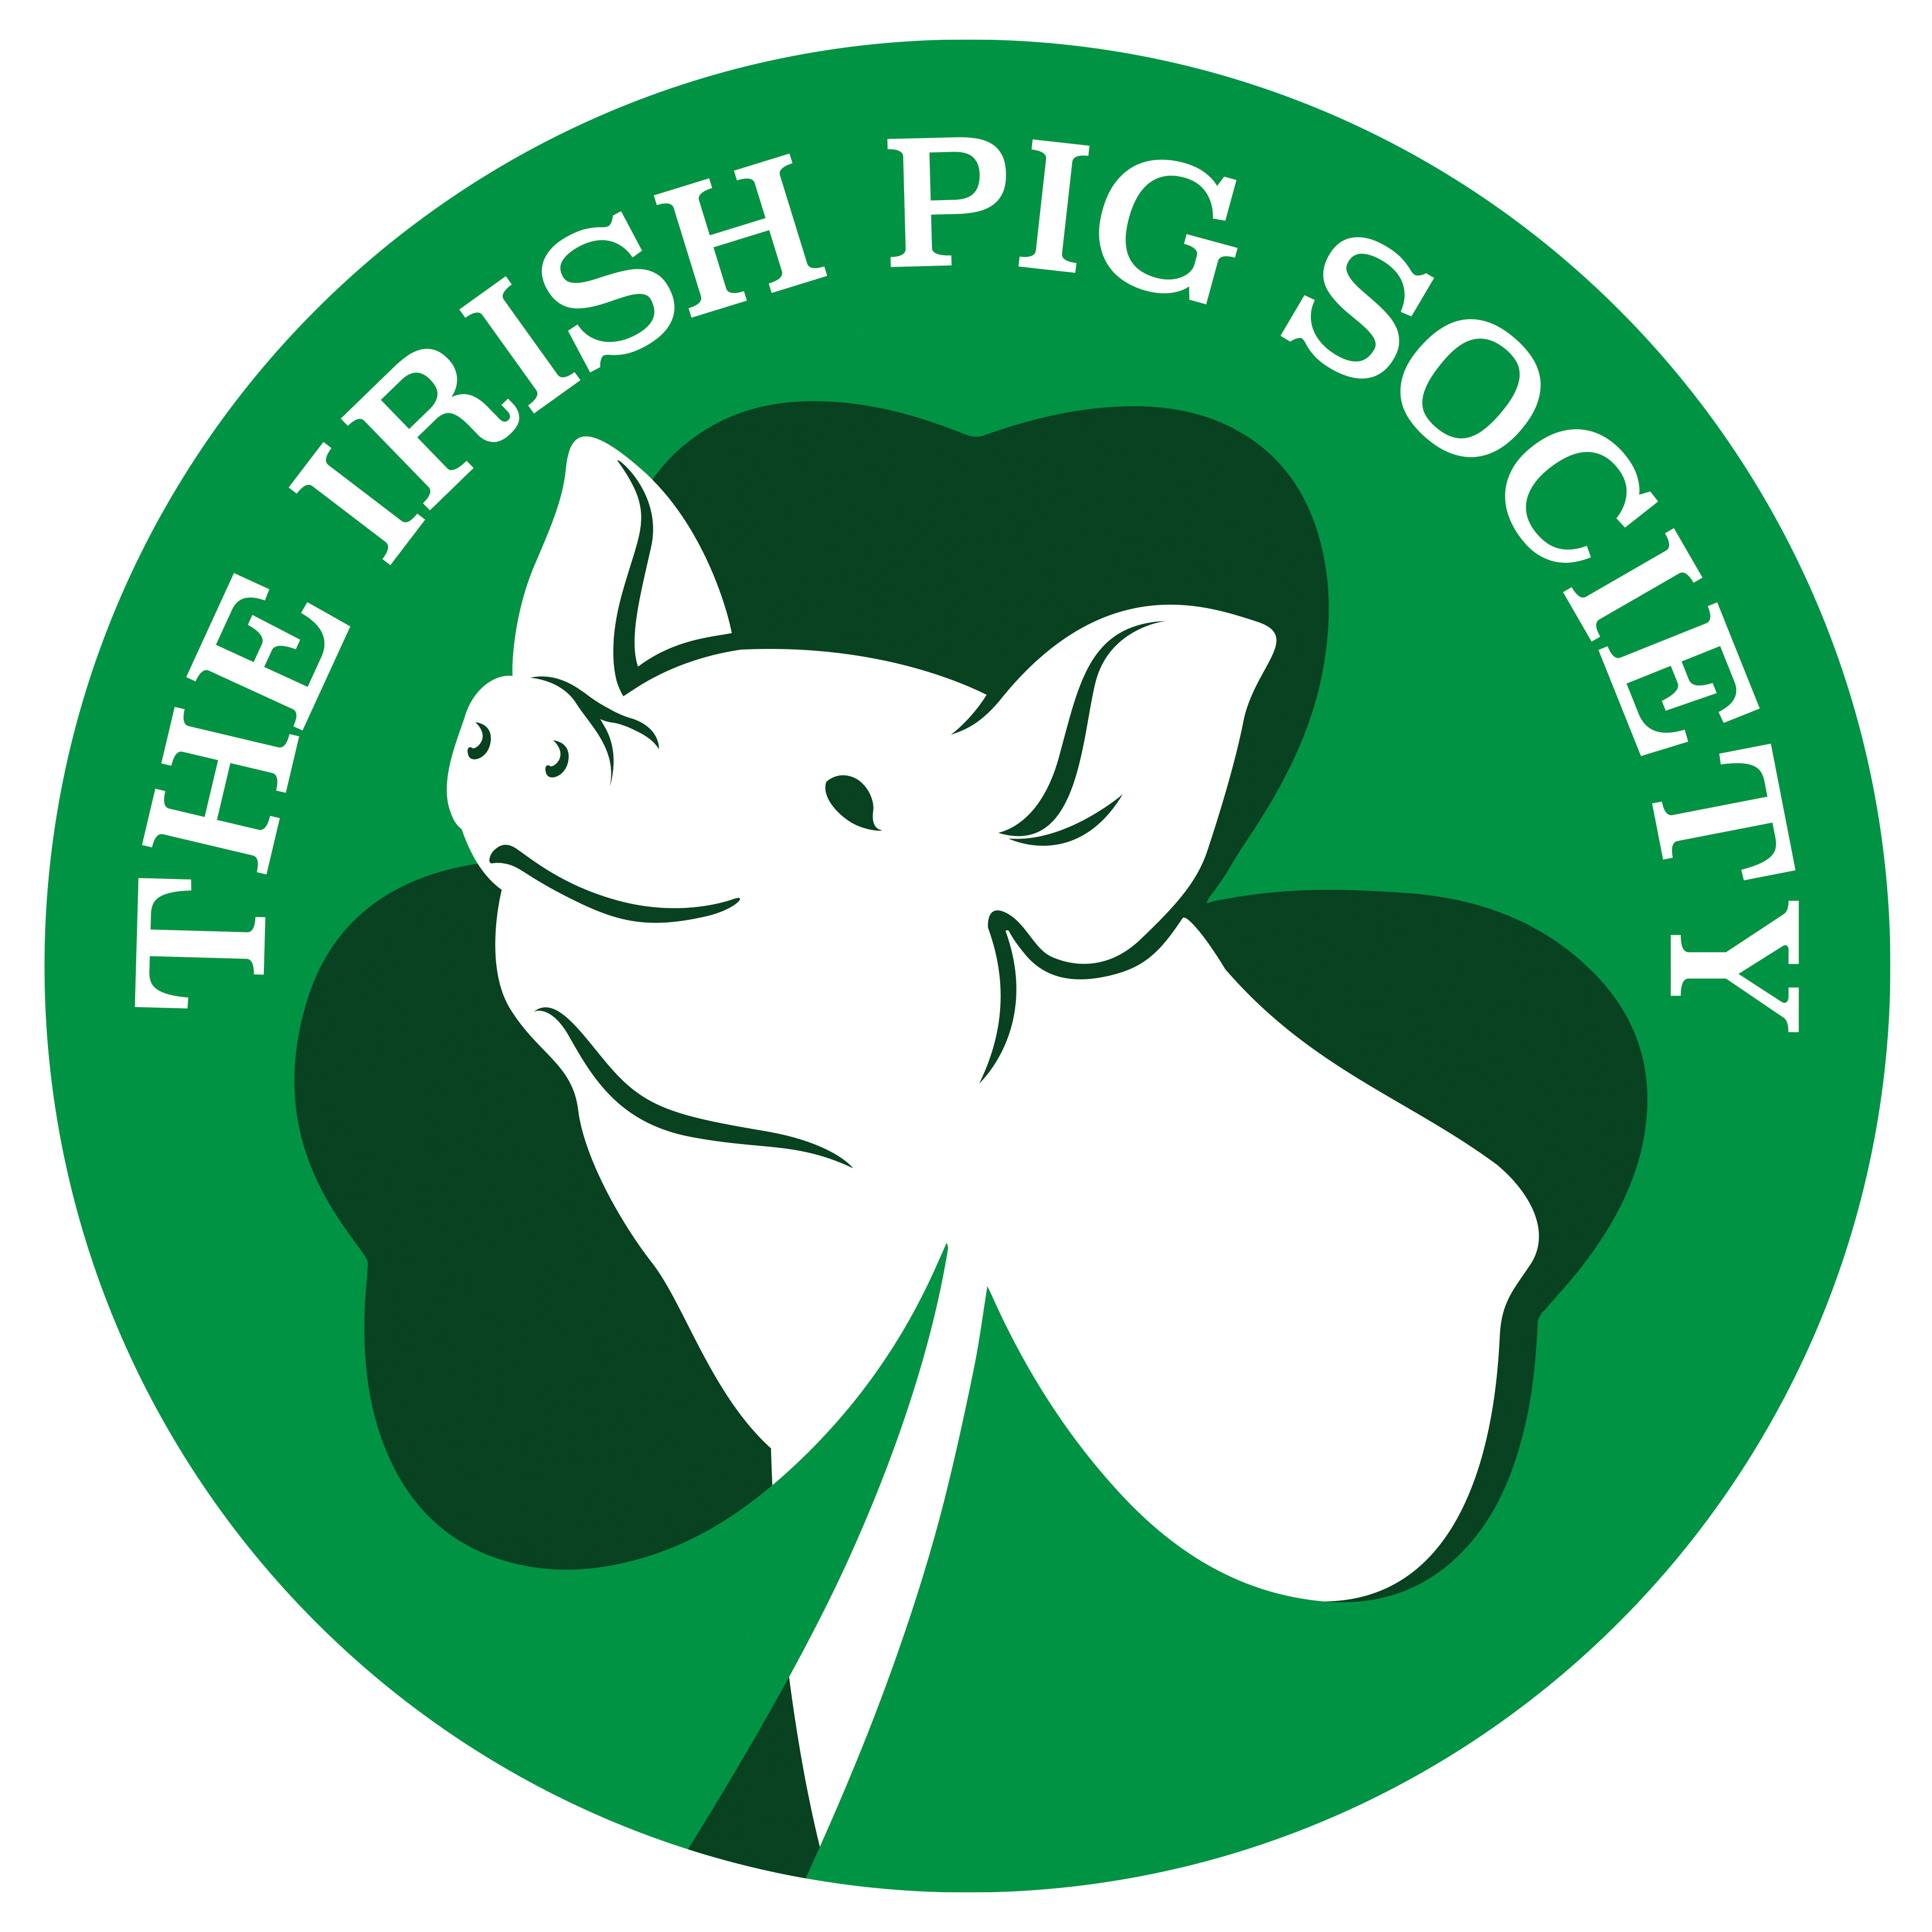 Irish Pig Society